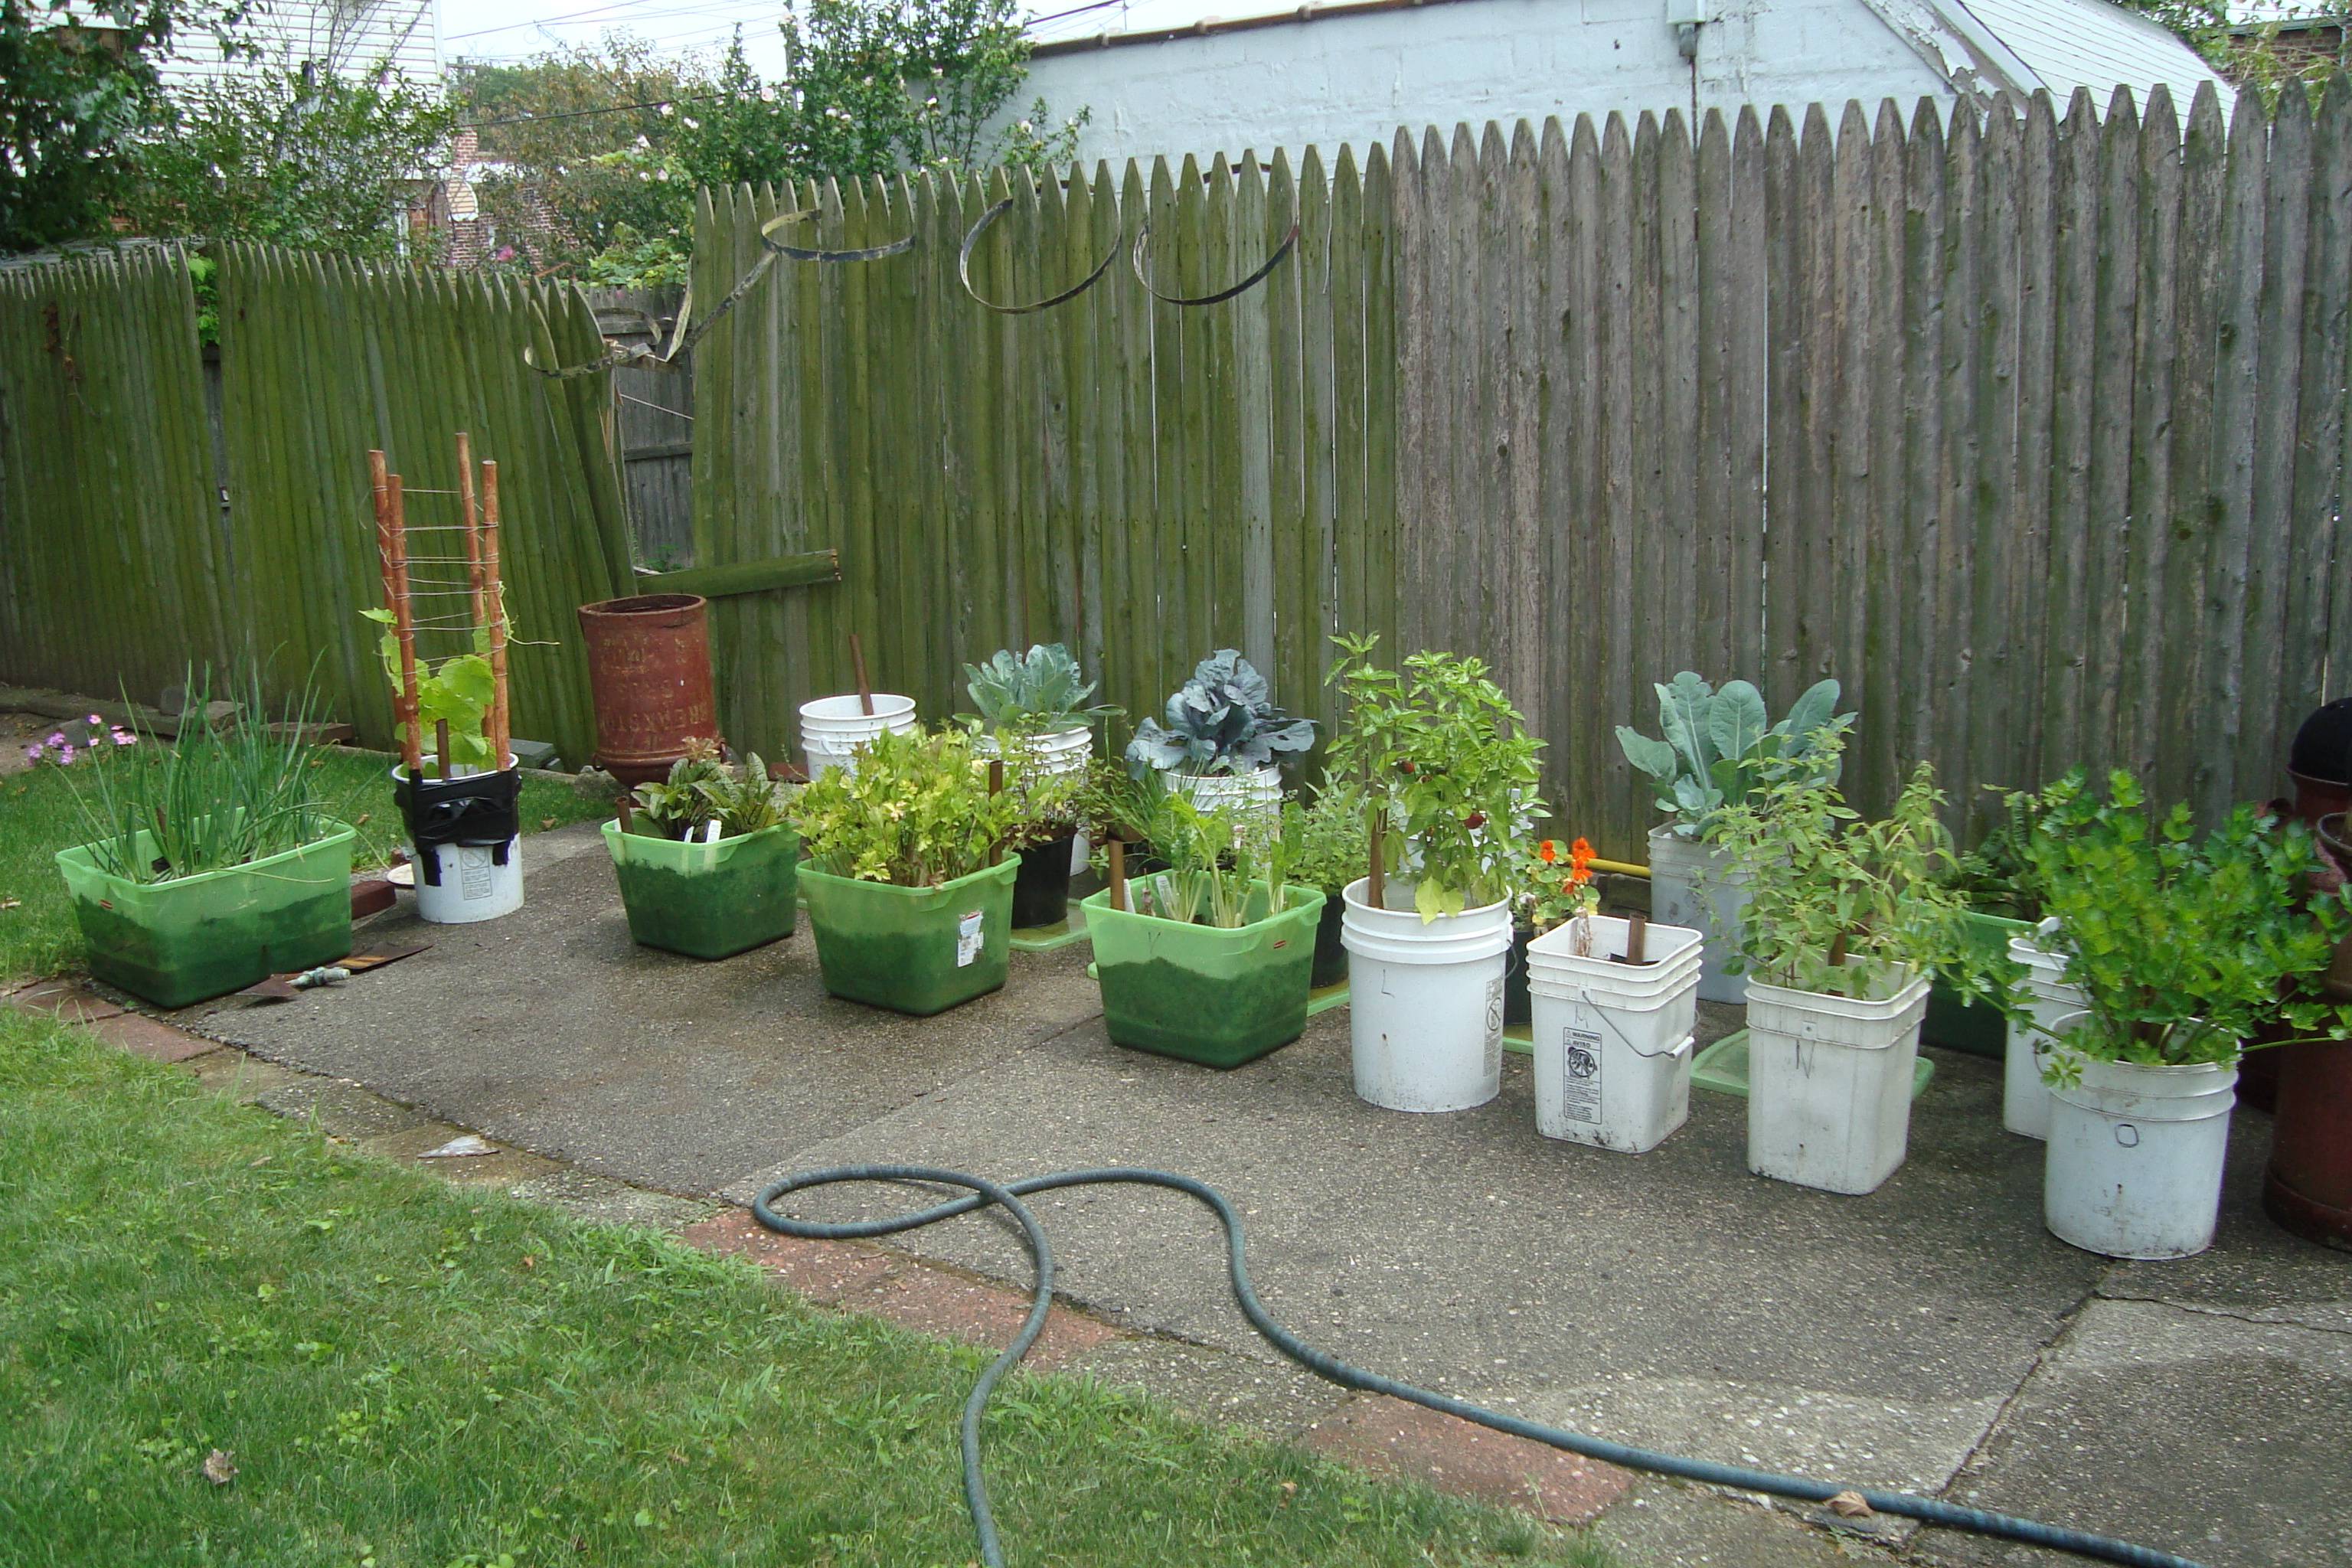 Easy Container Vegetable Garden Ideas